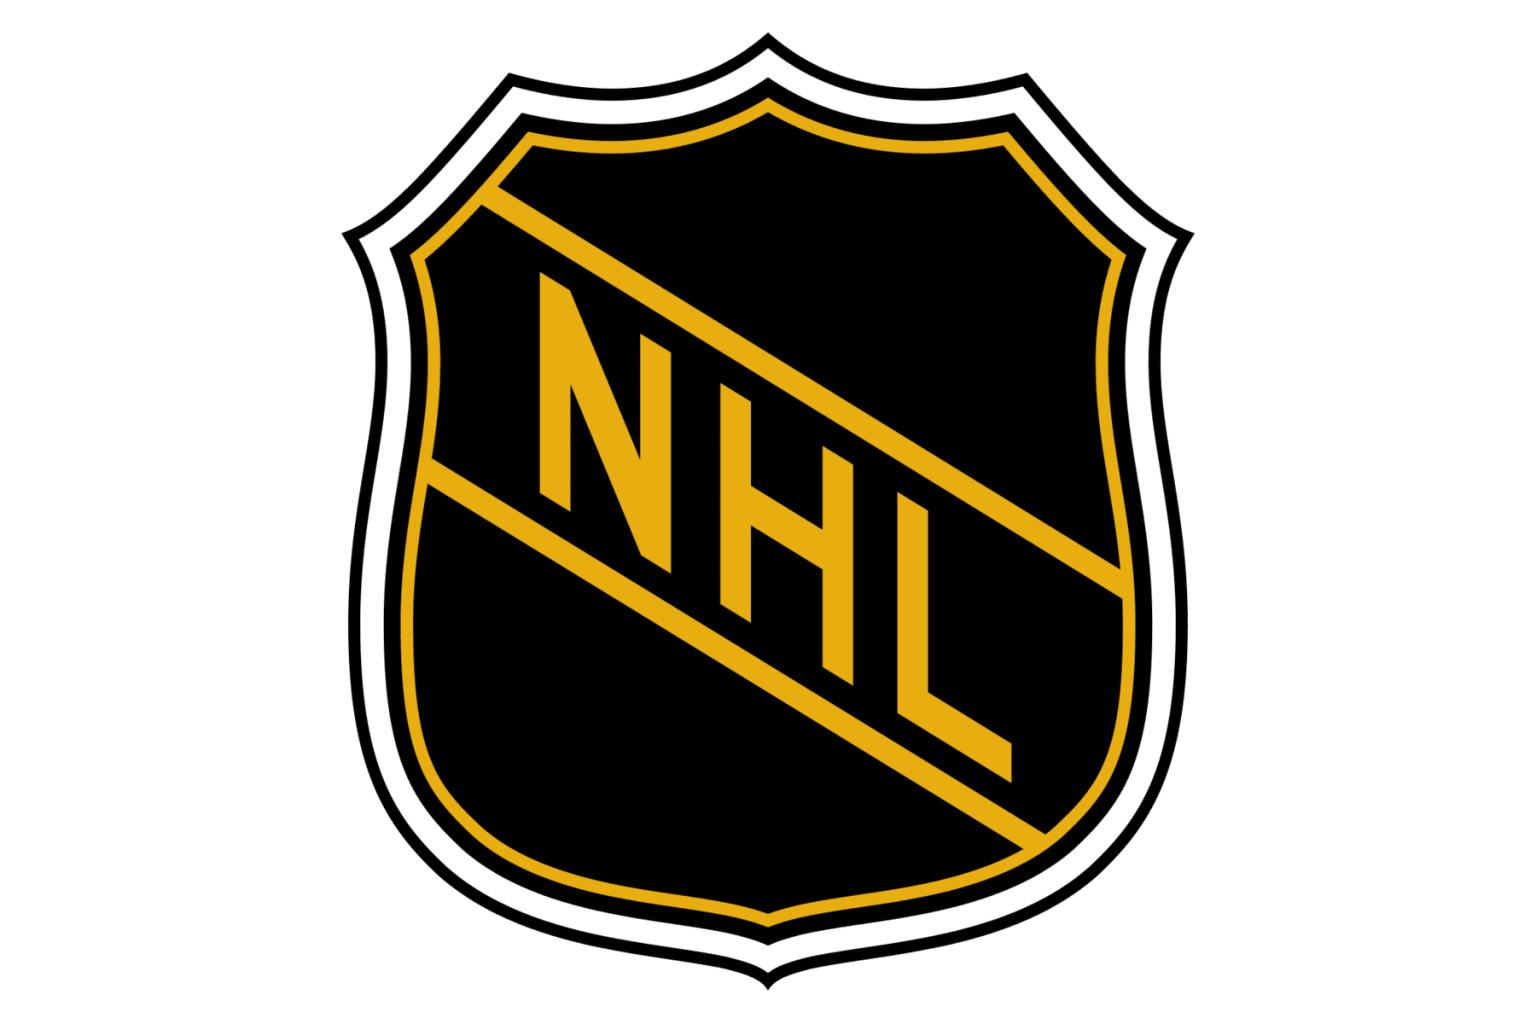 NHL image